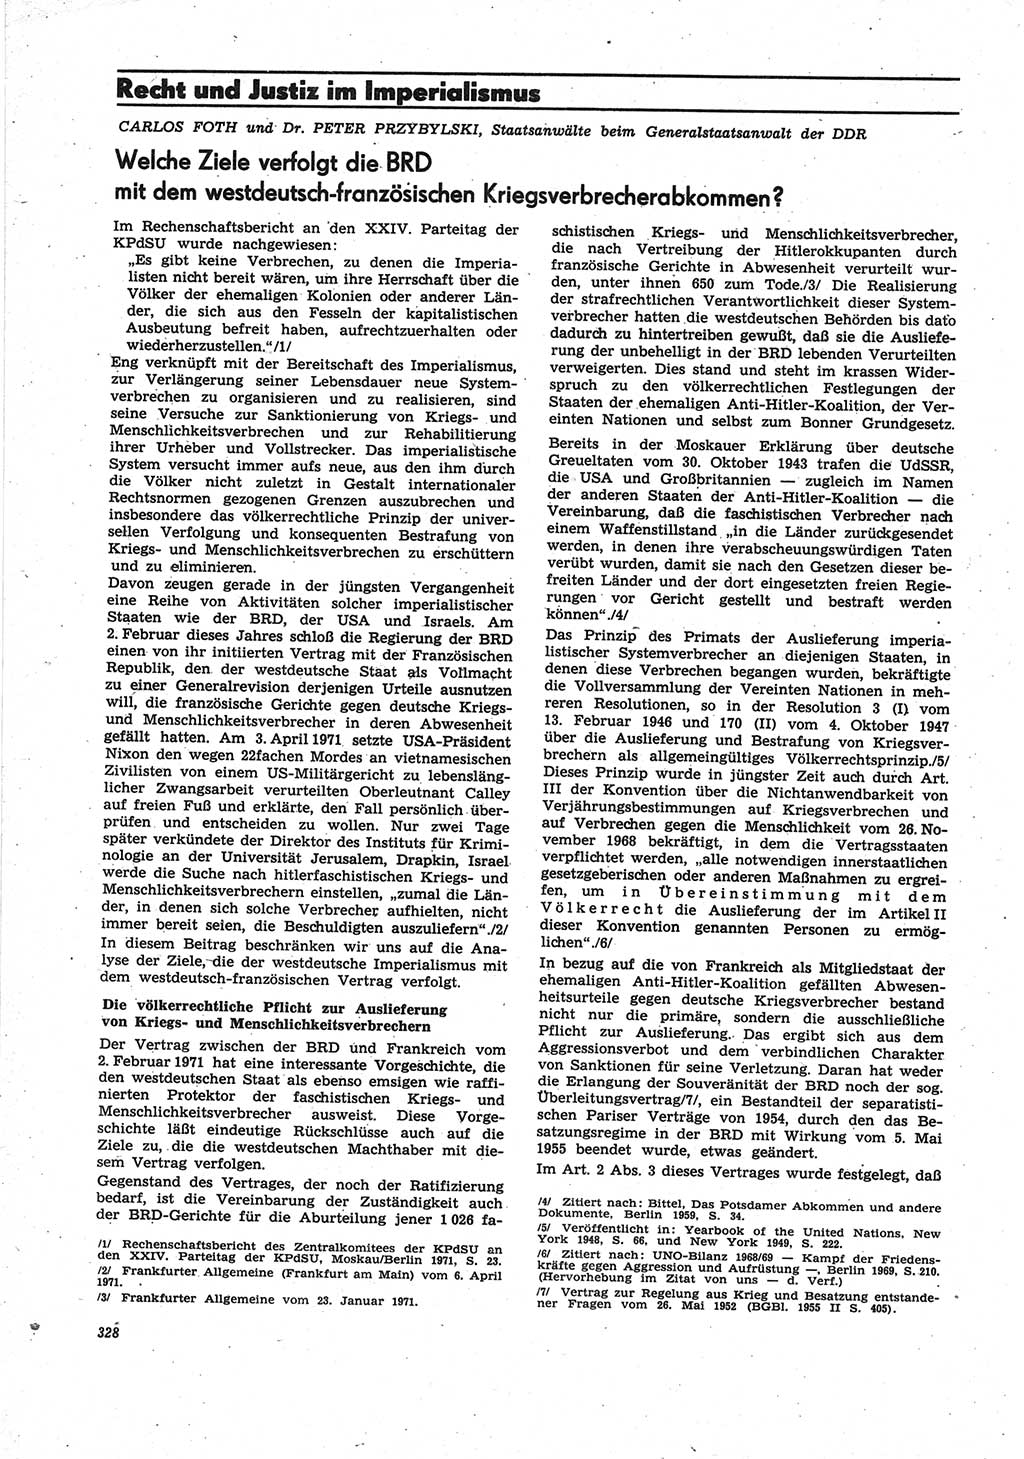 Neue Justiz (NJ), Zeitschrift für Recht und Rechtswissenschaft [Deutsche Demokratische Republik (DDR)], 25. Jahrgang 1971, Seite 328 (NJ DDR 1971, S. 328)